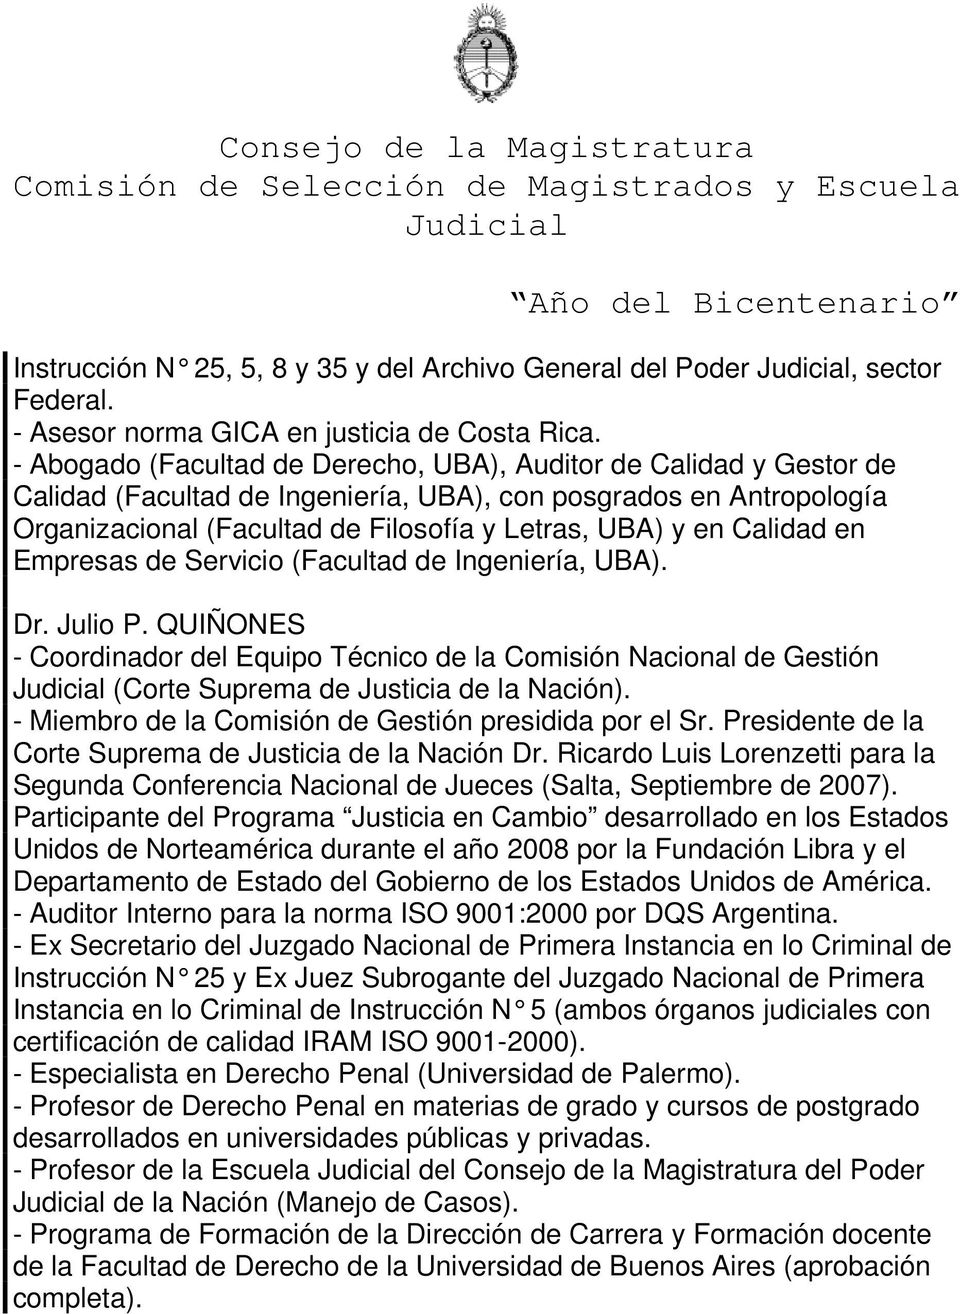 Calidad en Empresas de Servicio (Facultad de Ingeniería, UBA). Dr. Julio P. QUIÑONES - Coordinador del Equipo Técnico de la Comisión Nacional de Gestión (Corte Suprema de Justicia de la Nación).